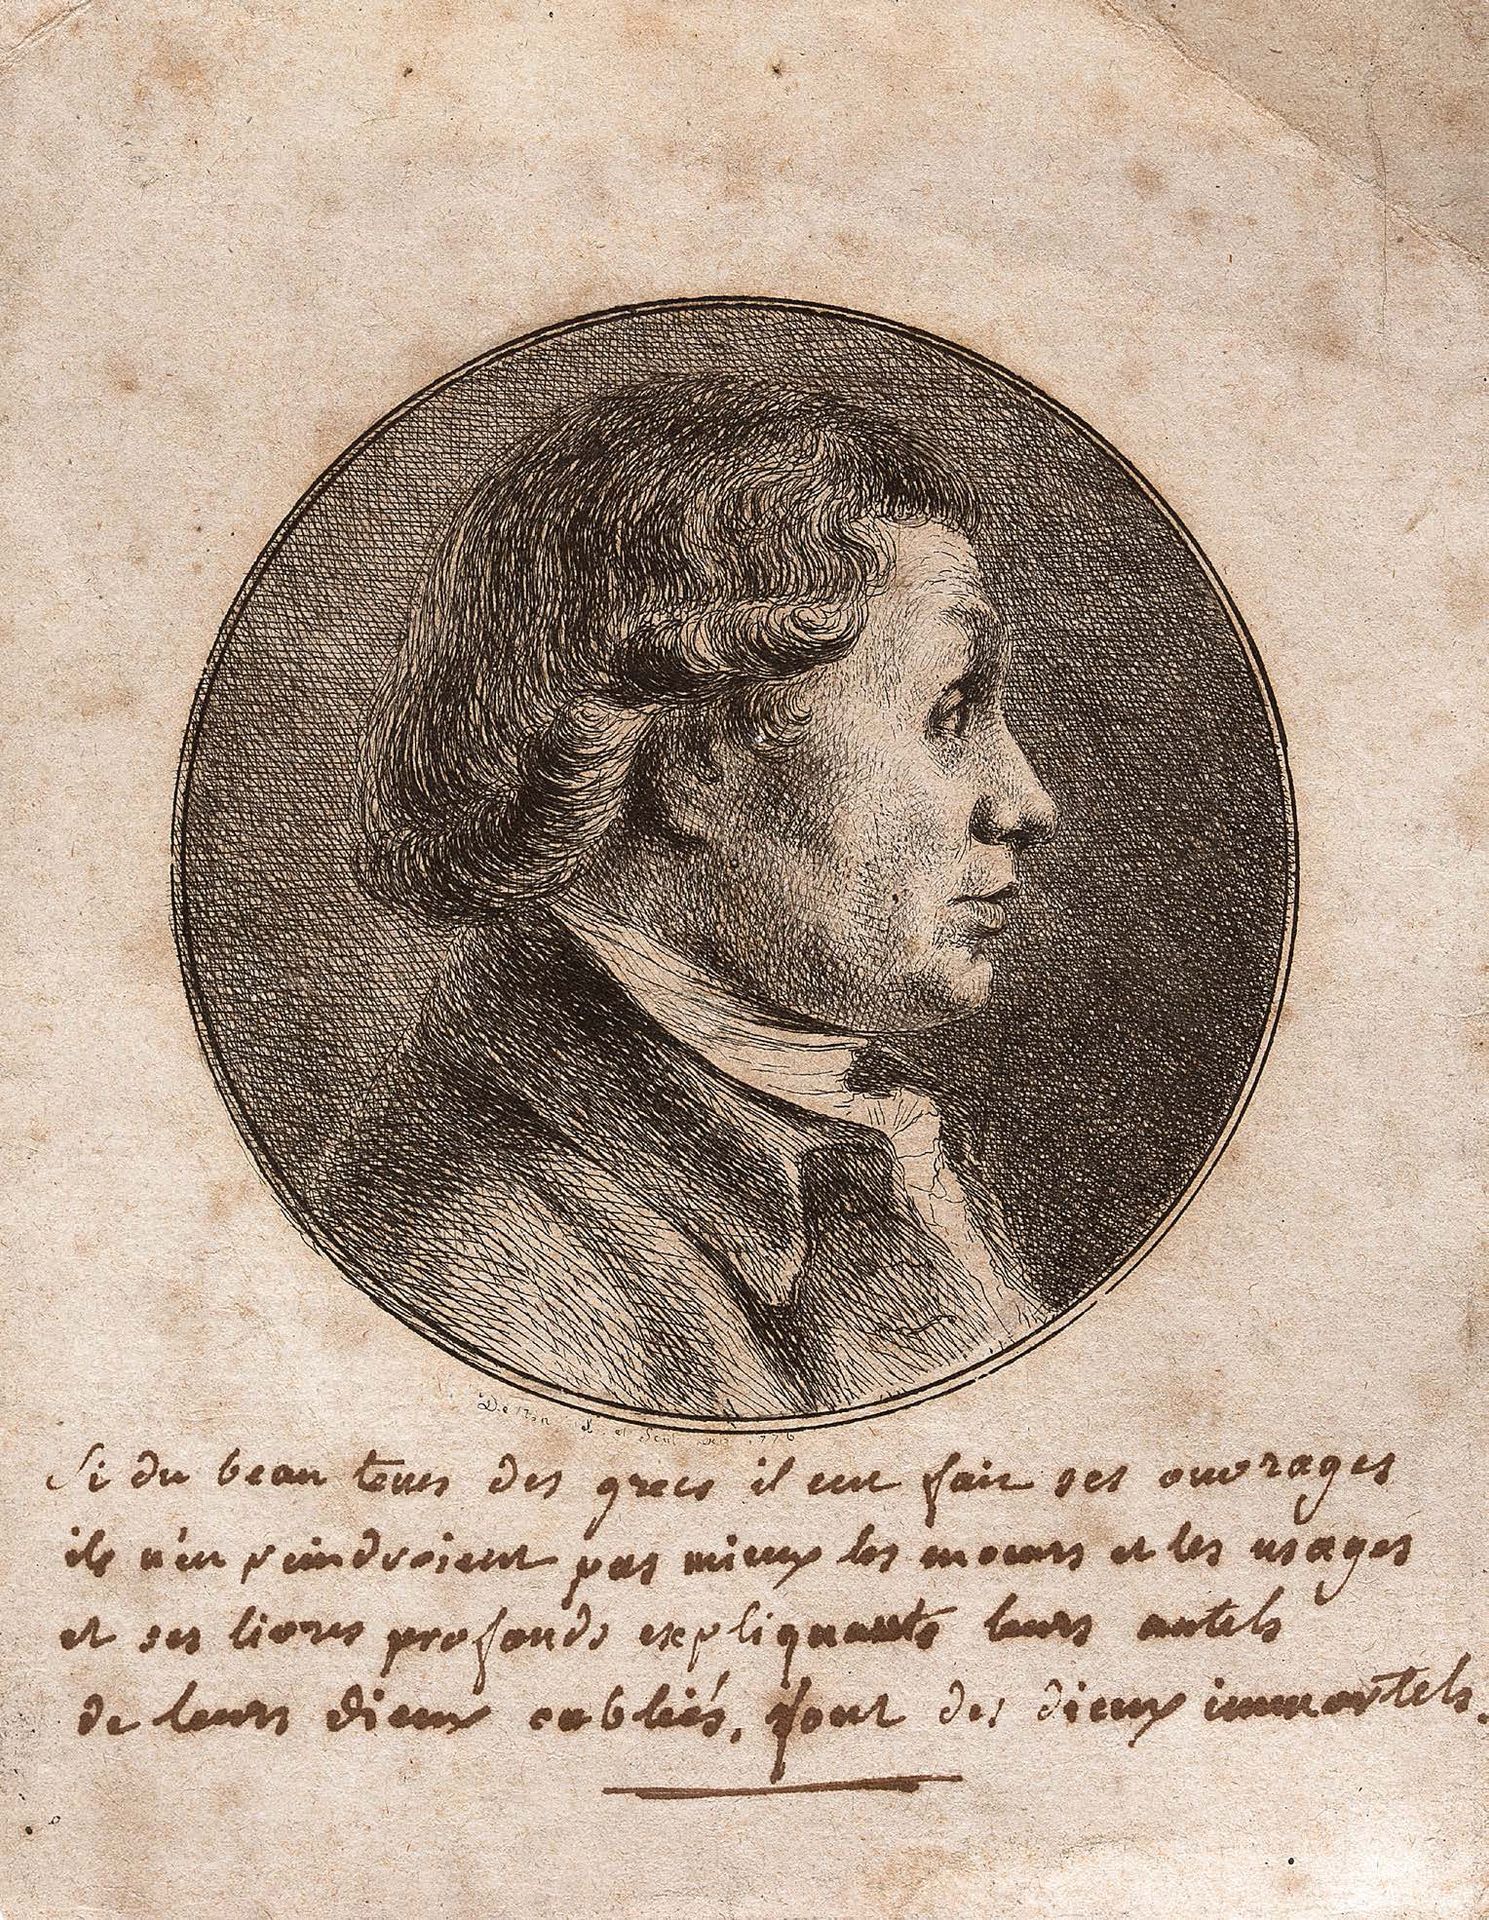 DOMINIQUE VIVANT DENON CHALON-SUR-SAÔNE, 1747 - 1825, PARIS 
Portrait of a Man

&hellip;